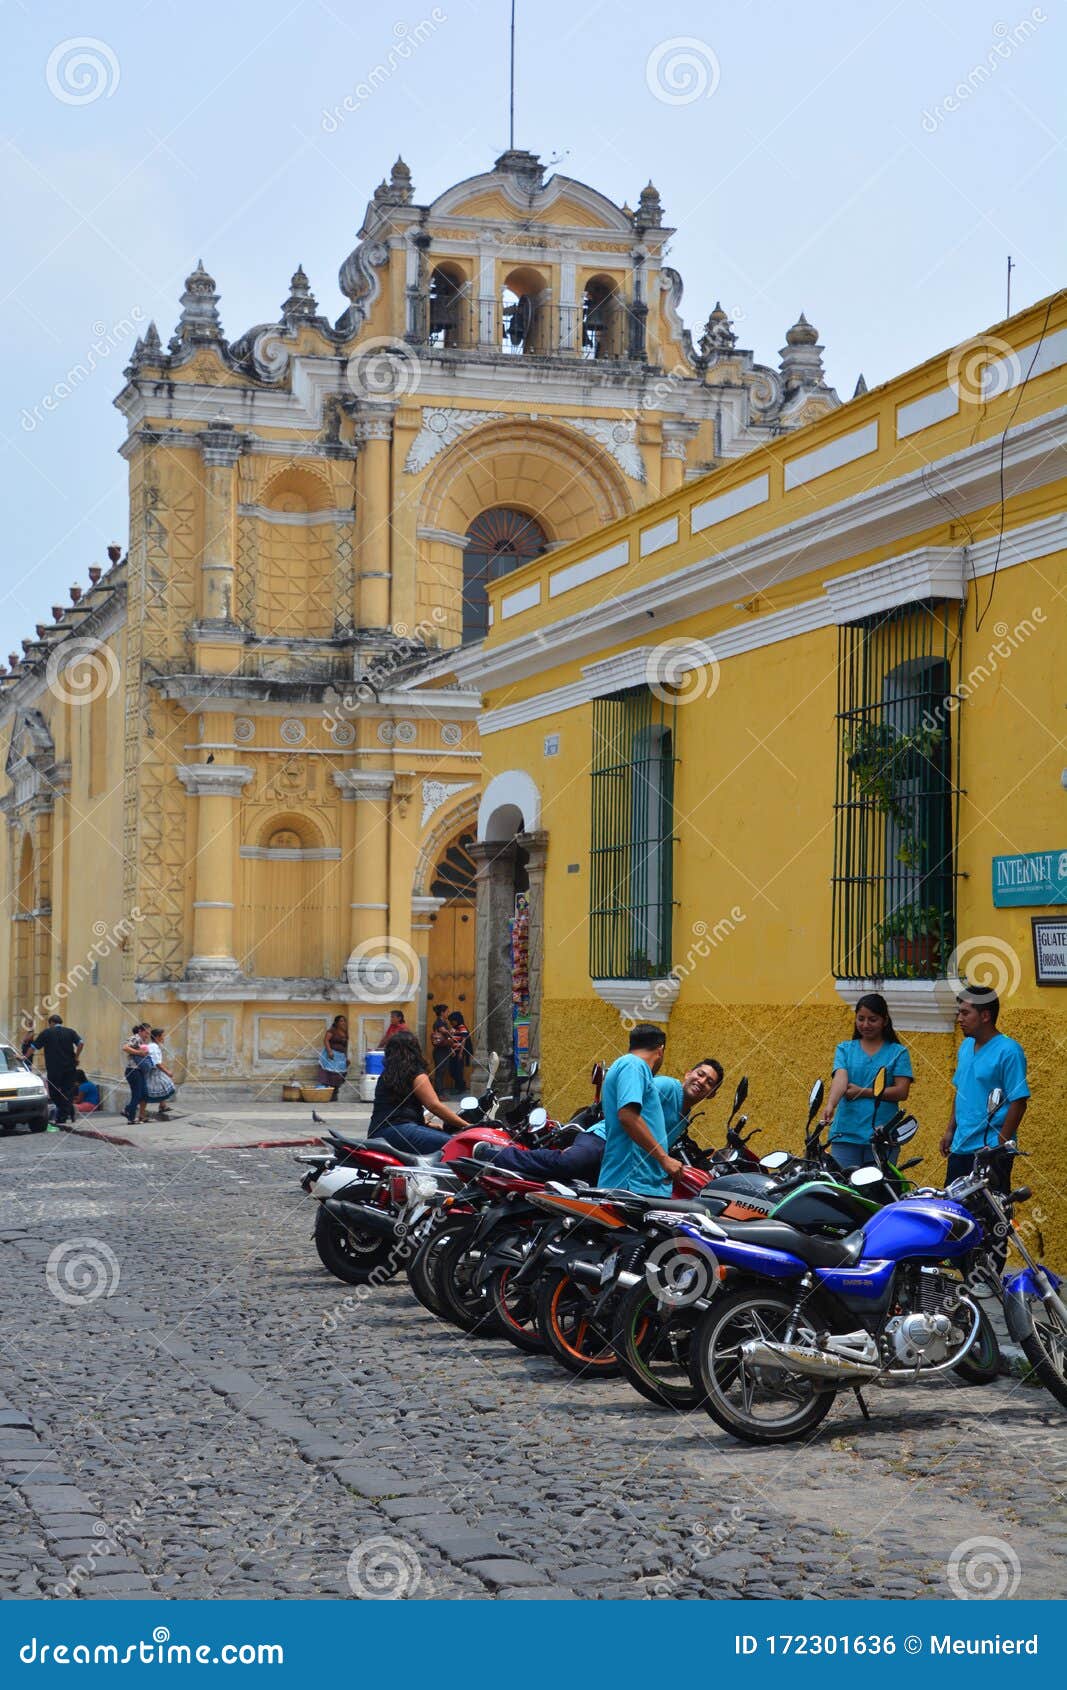 Meet men in Antigua Guatemala | Dating site | Topface